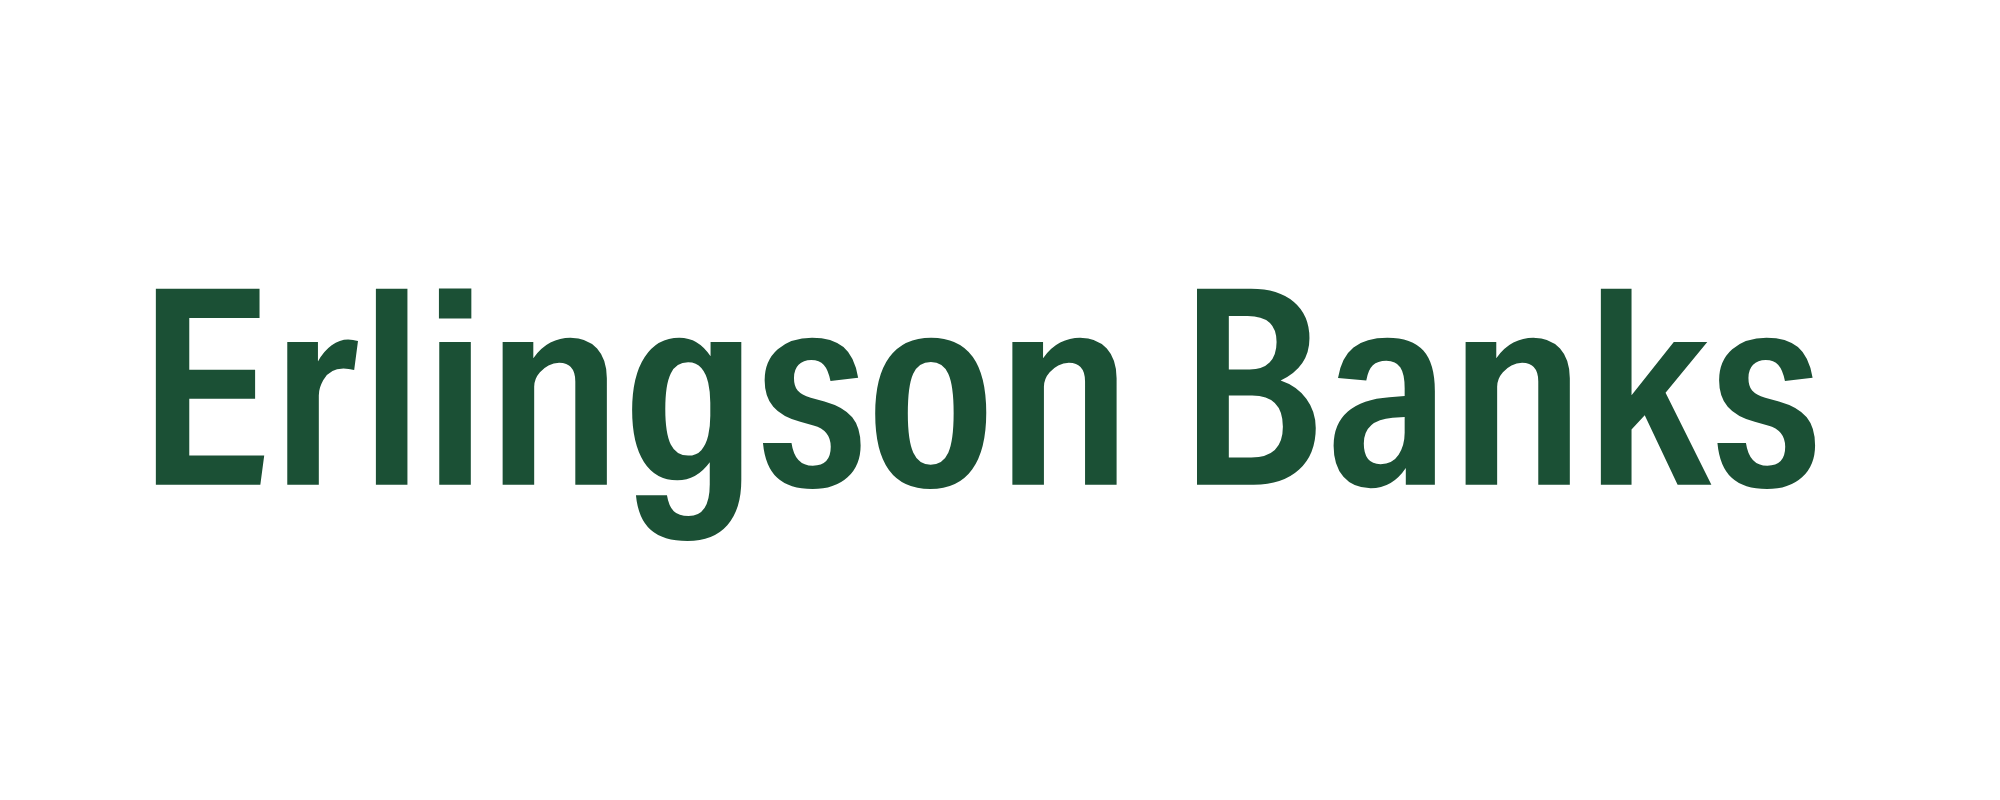 Erlingson Banks